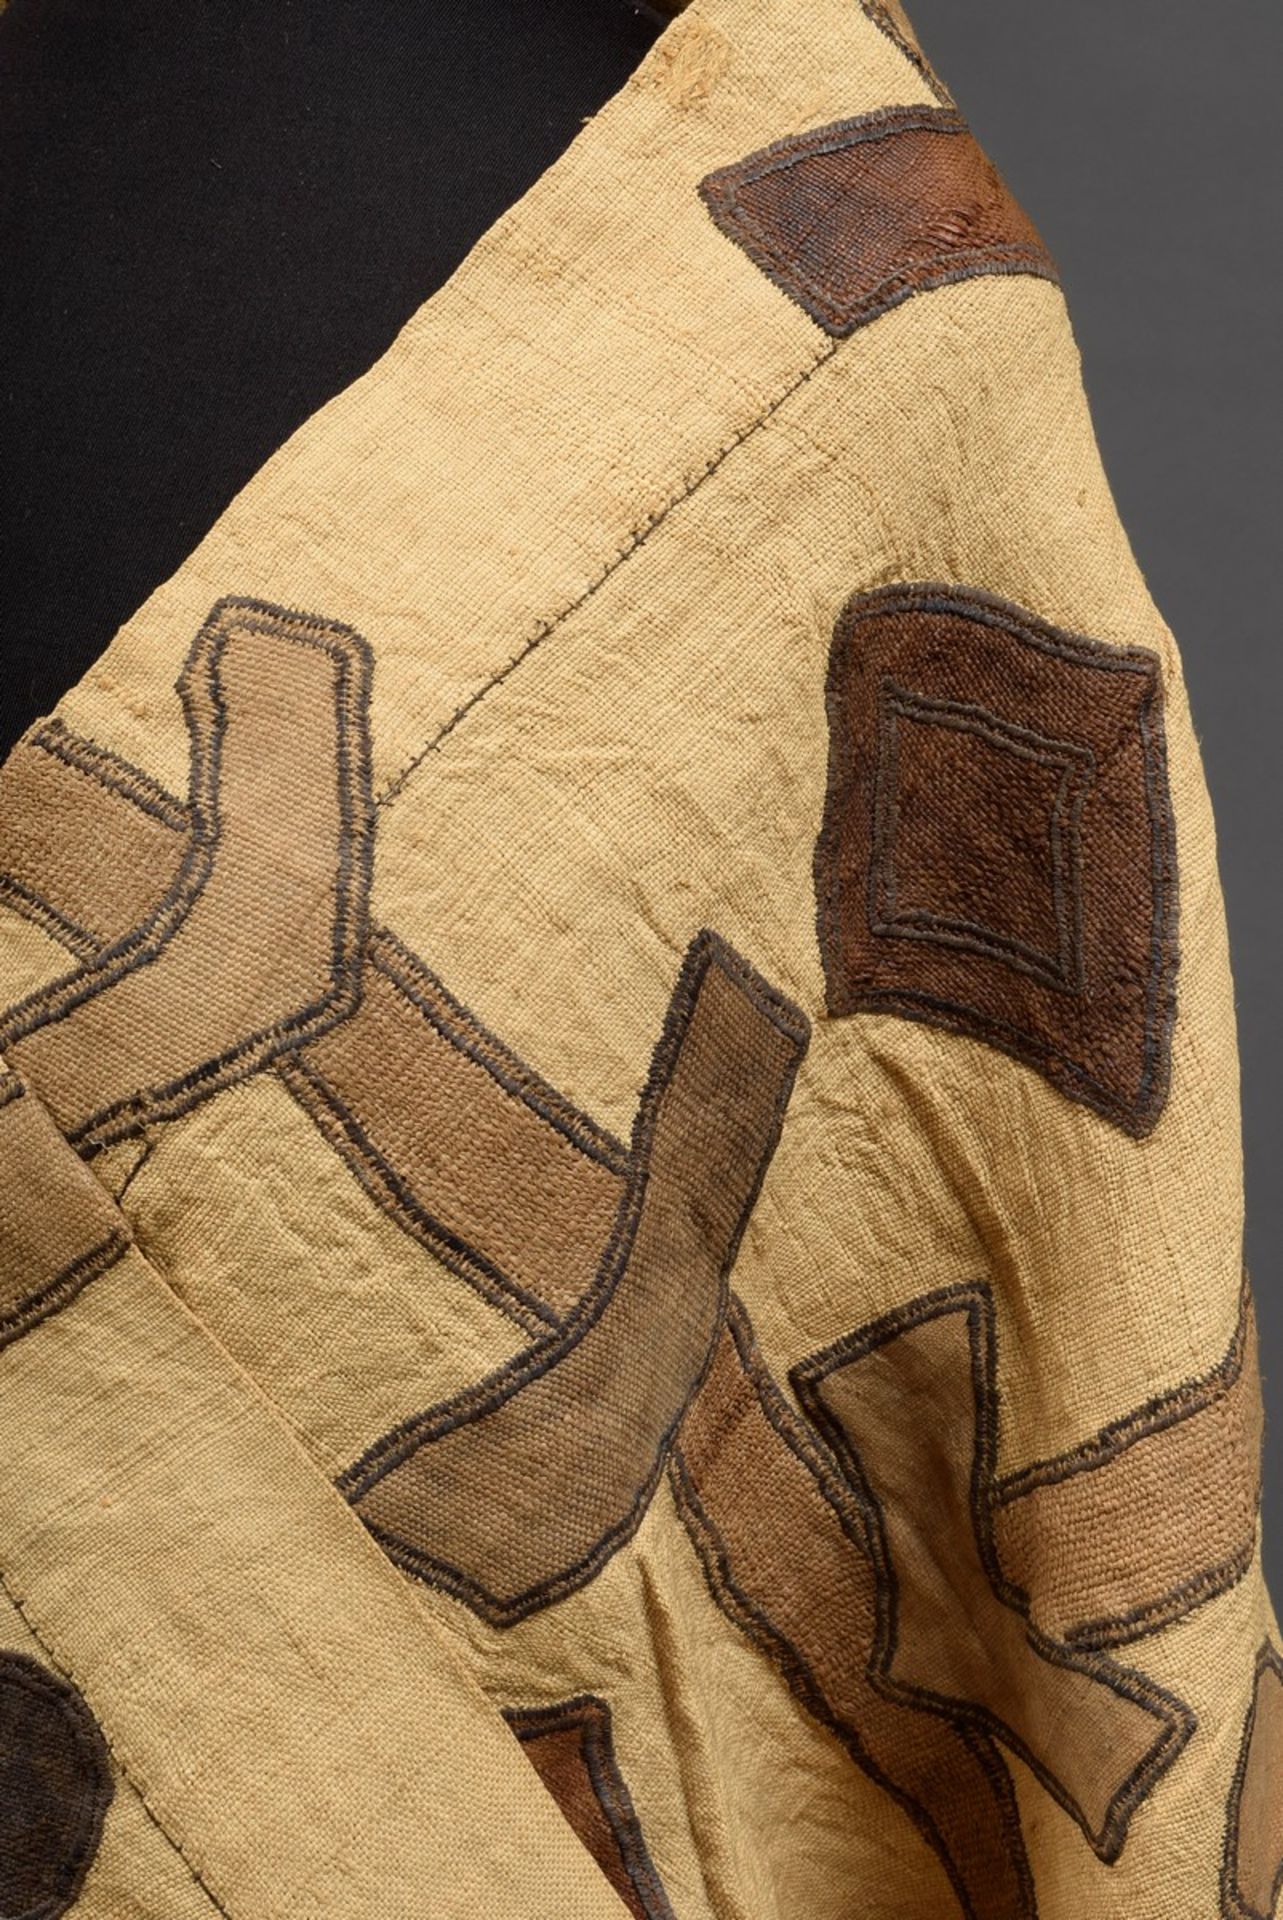 Frauentanzkleid/Wickelrock aus afrikanischem Raffia Gewebe mit geometrischen Mu - Bild 4 aus 4